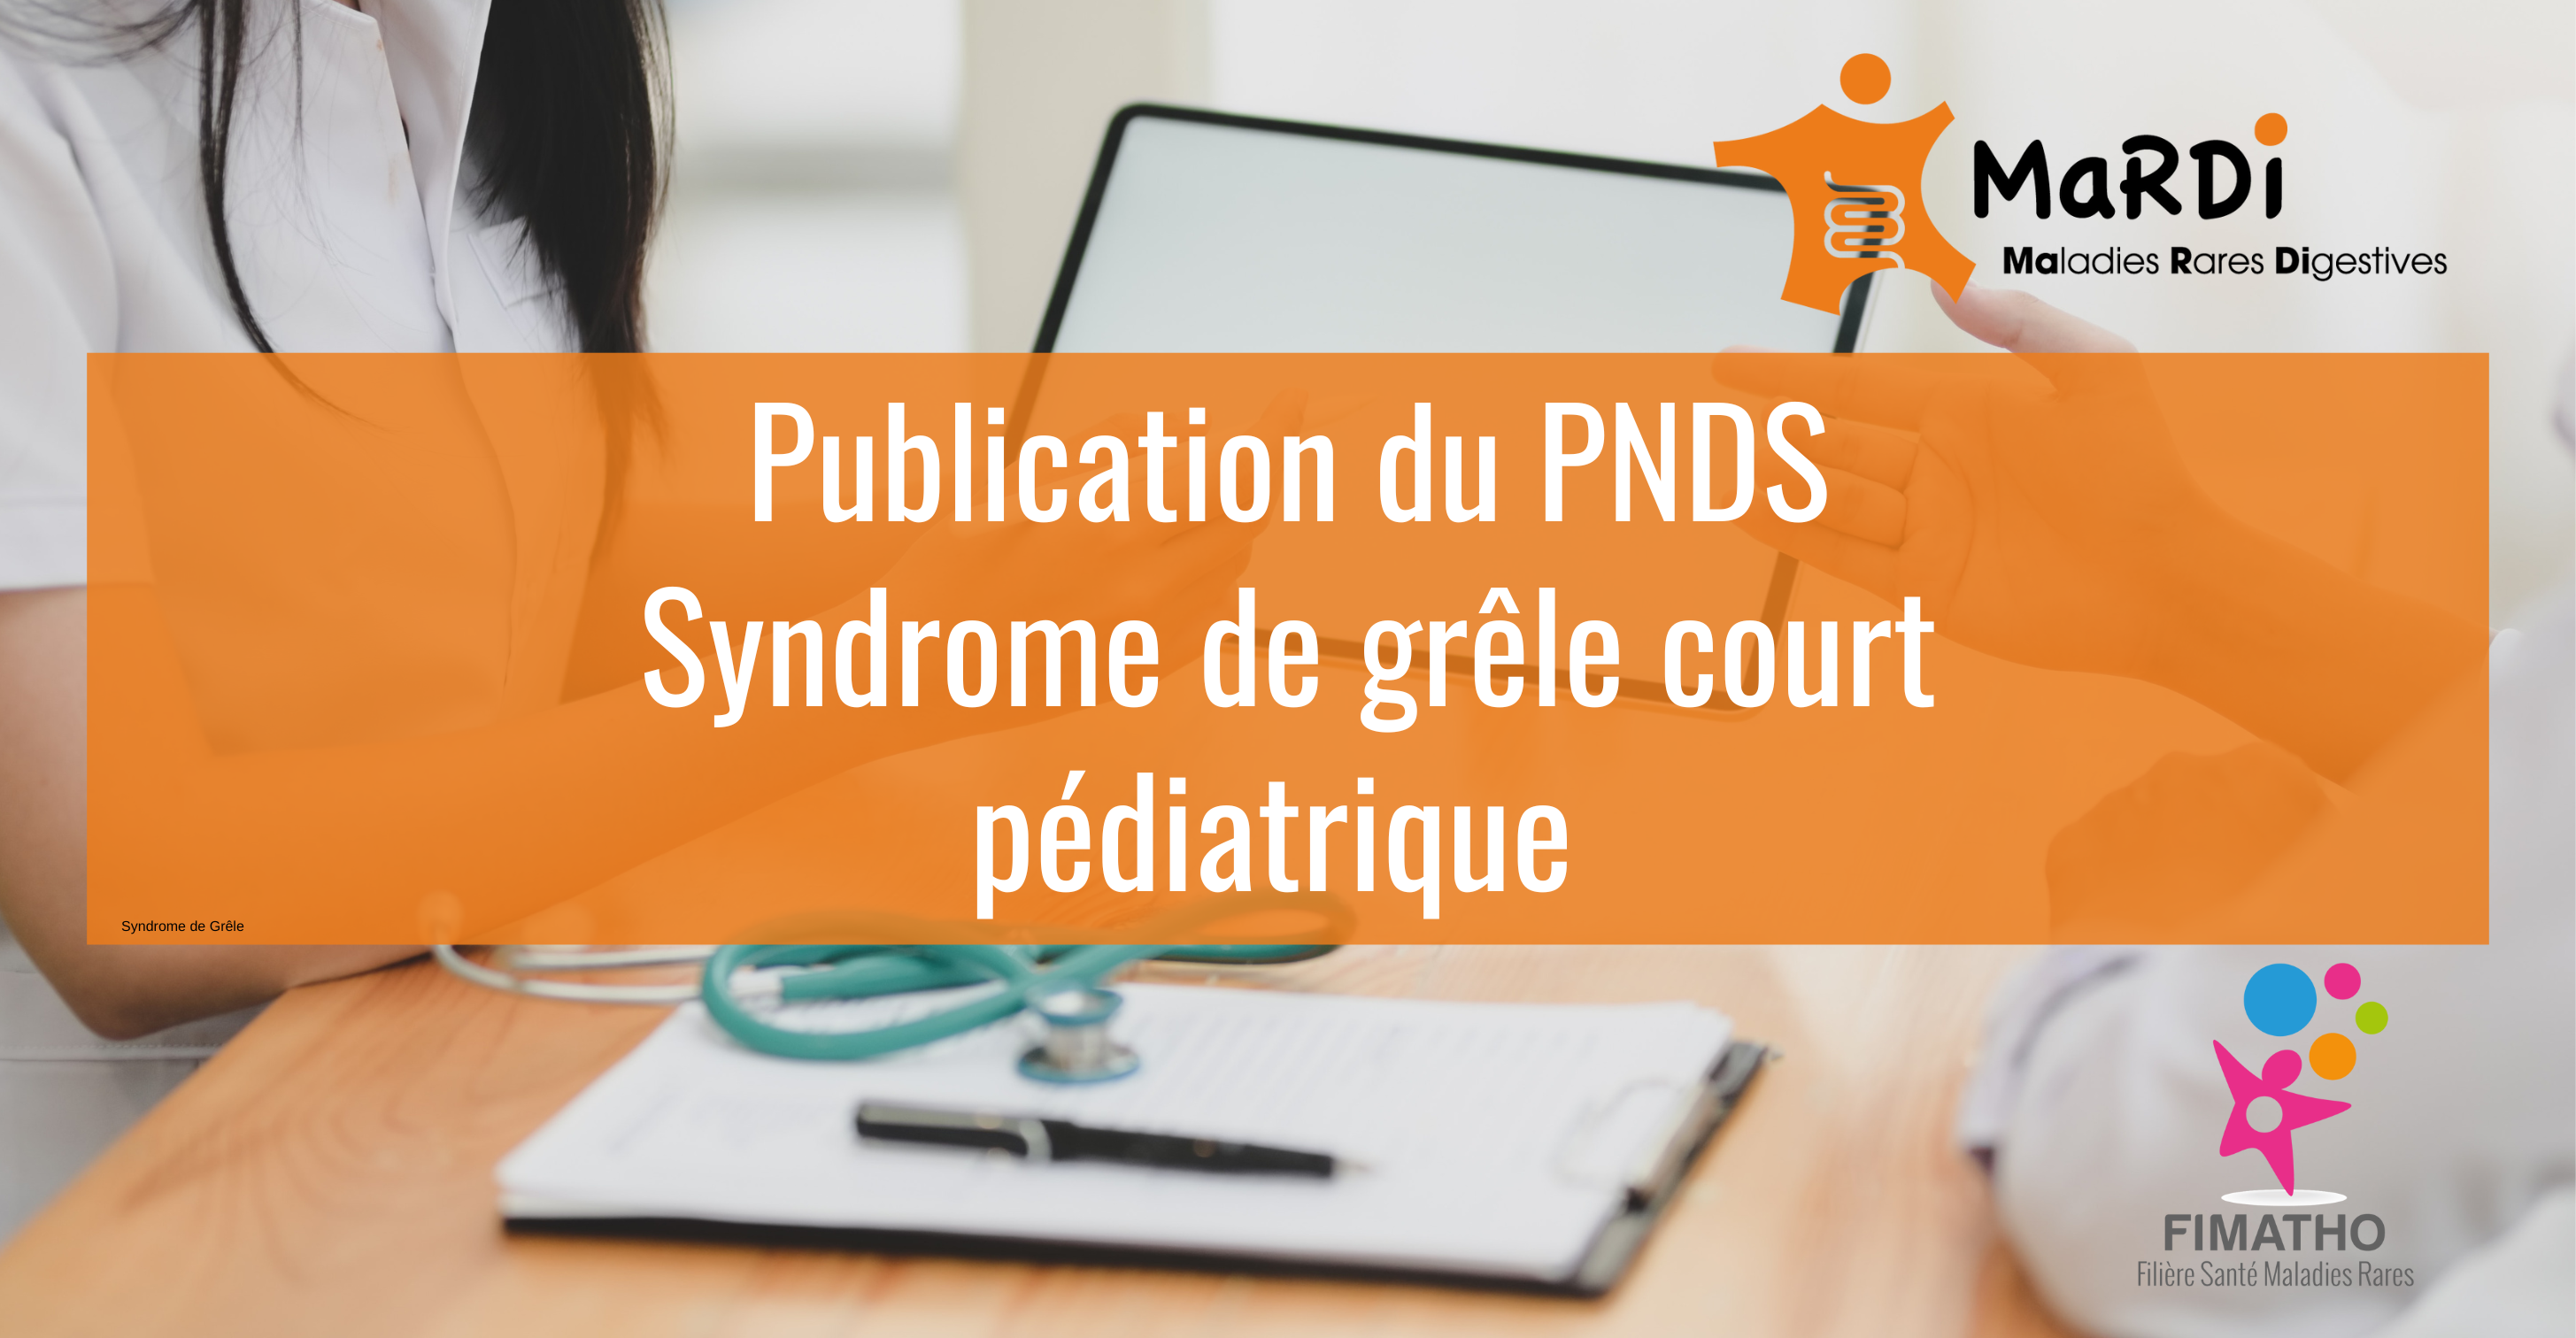 Le PNDS sur le Syndrome de grêle court pédiatrique est disponible